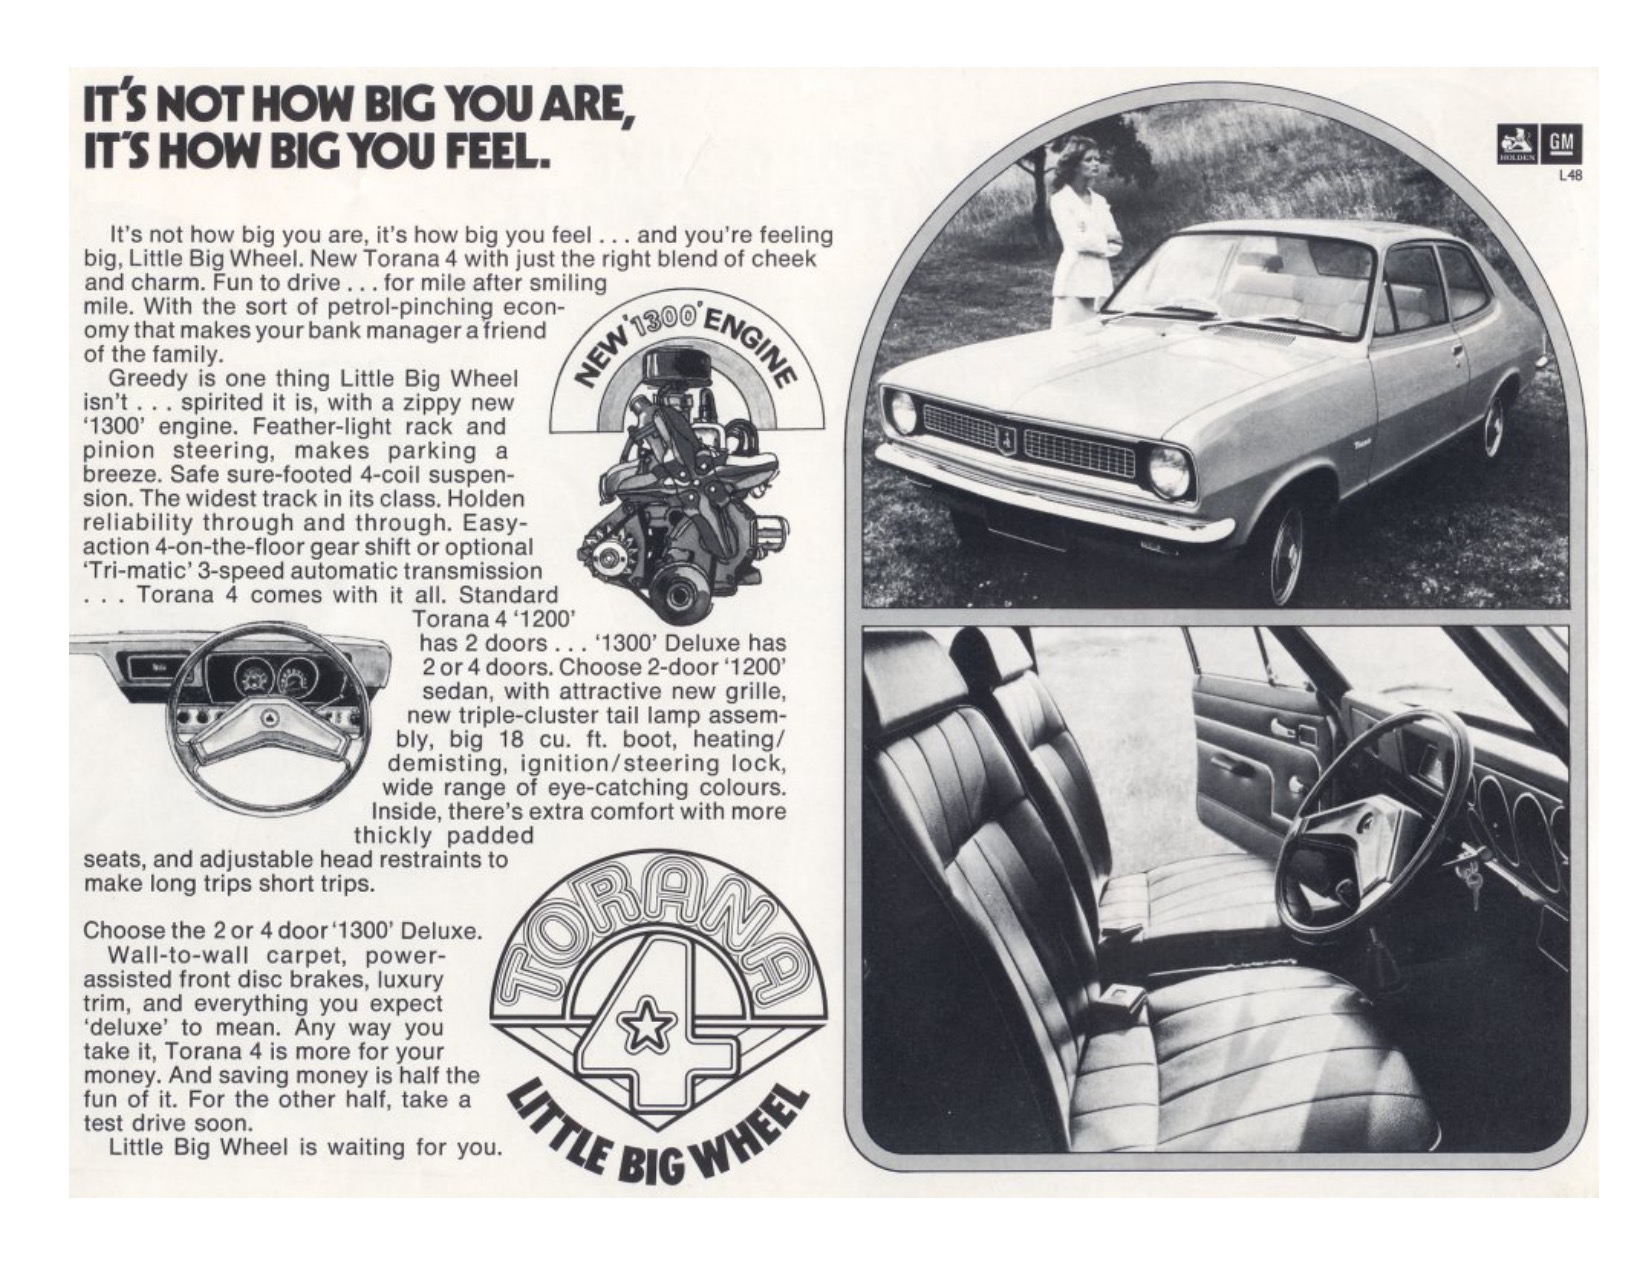 1972 Holden Torana LJ 1300 DeLuxe Brochure Page 1